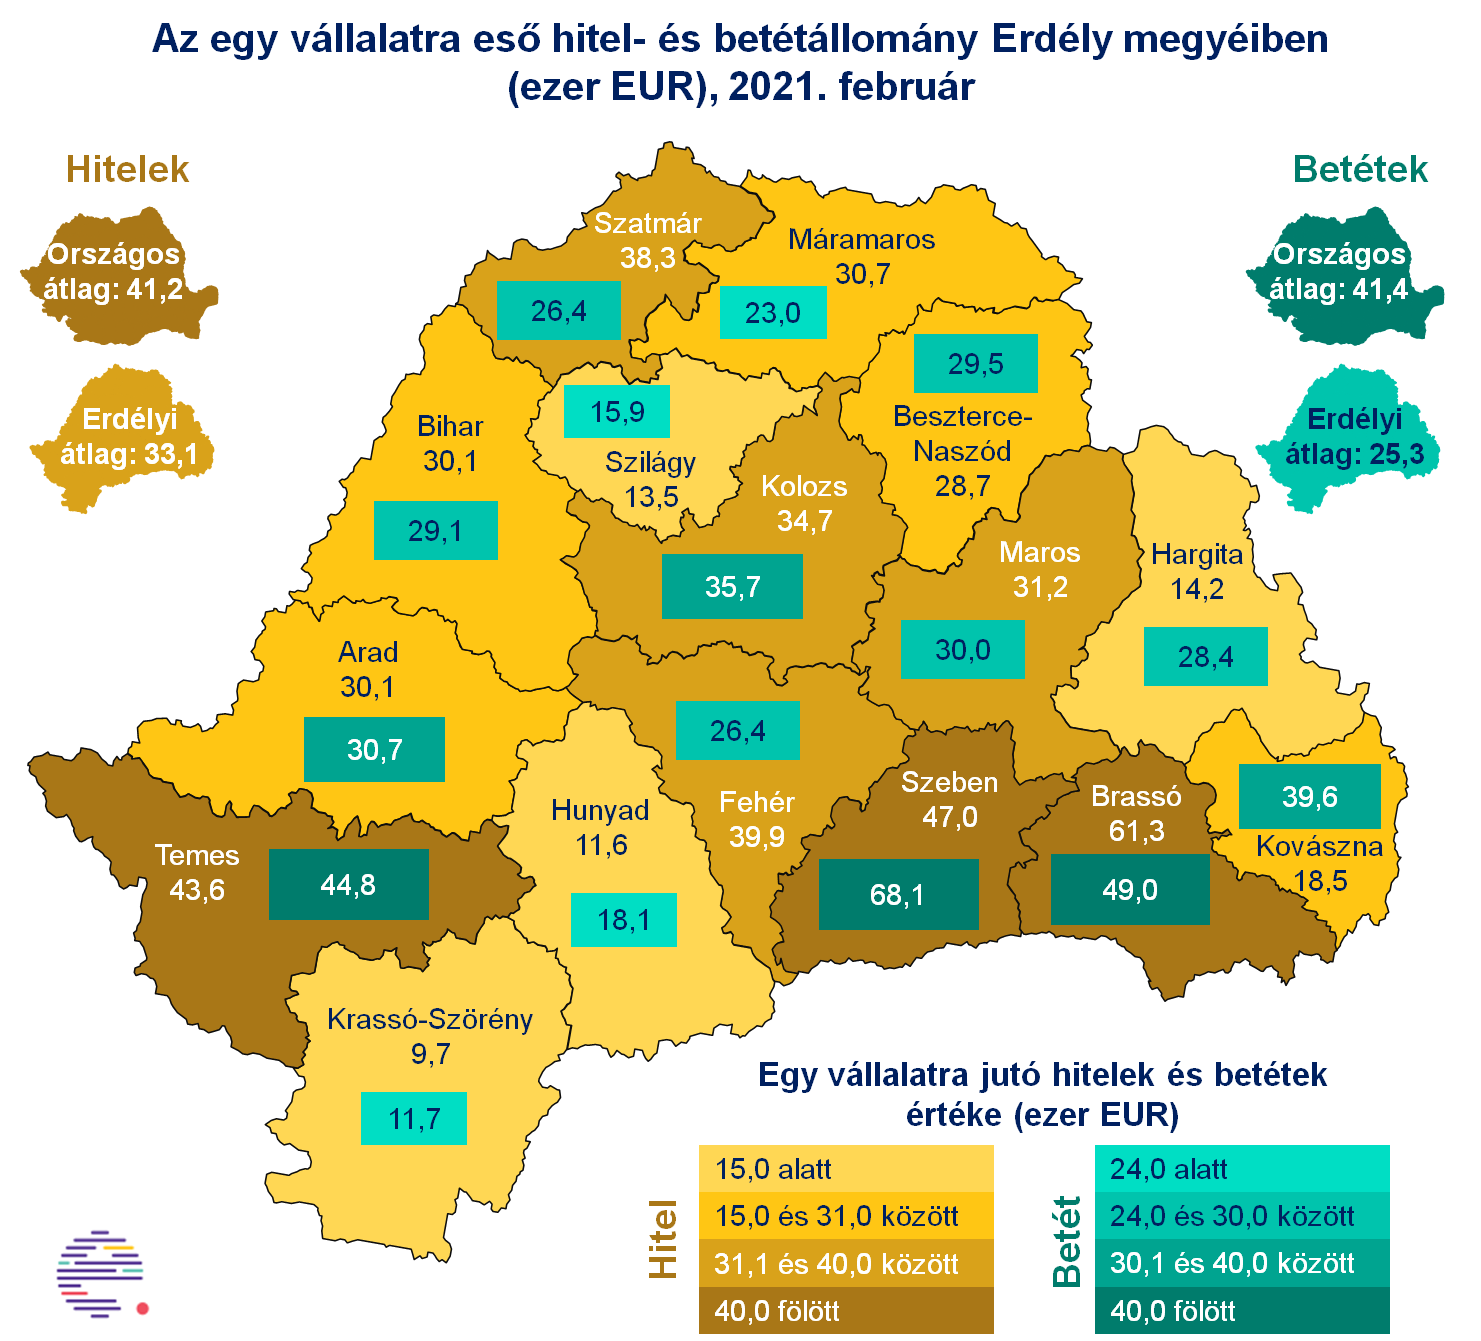 Az erdélyi megyék között nem számottevőek az eltérések / Illusztráció: Erdélystat